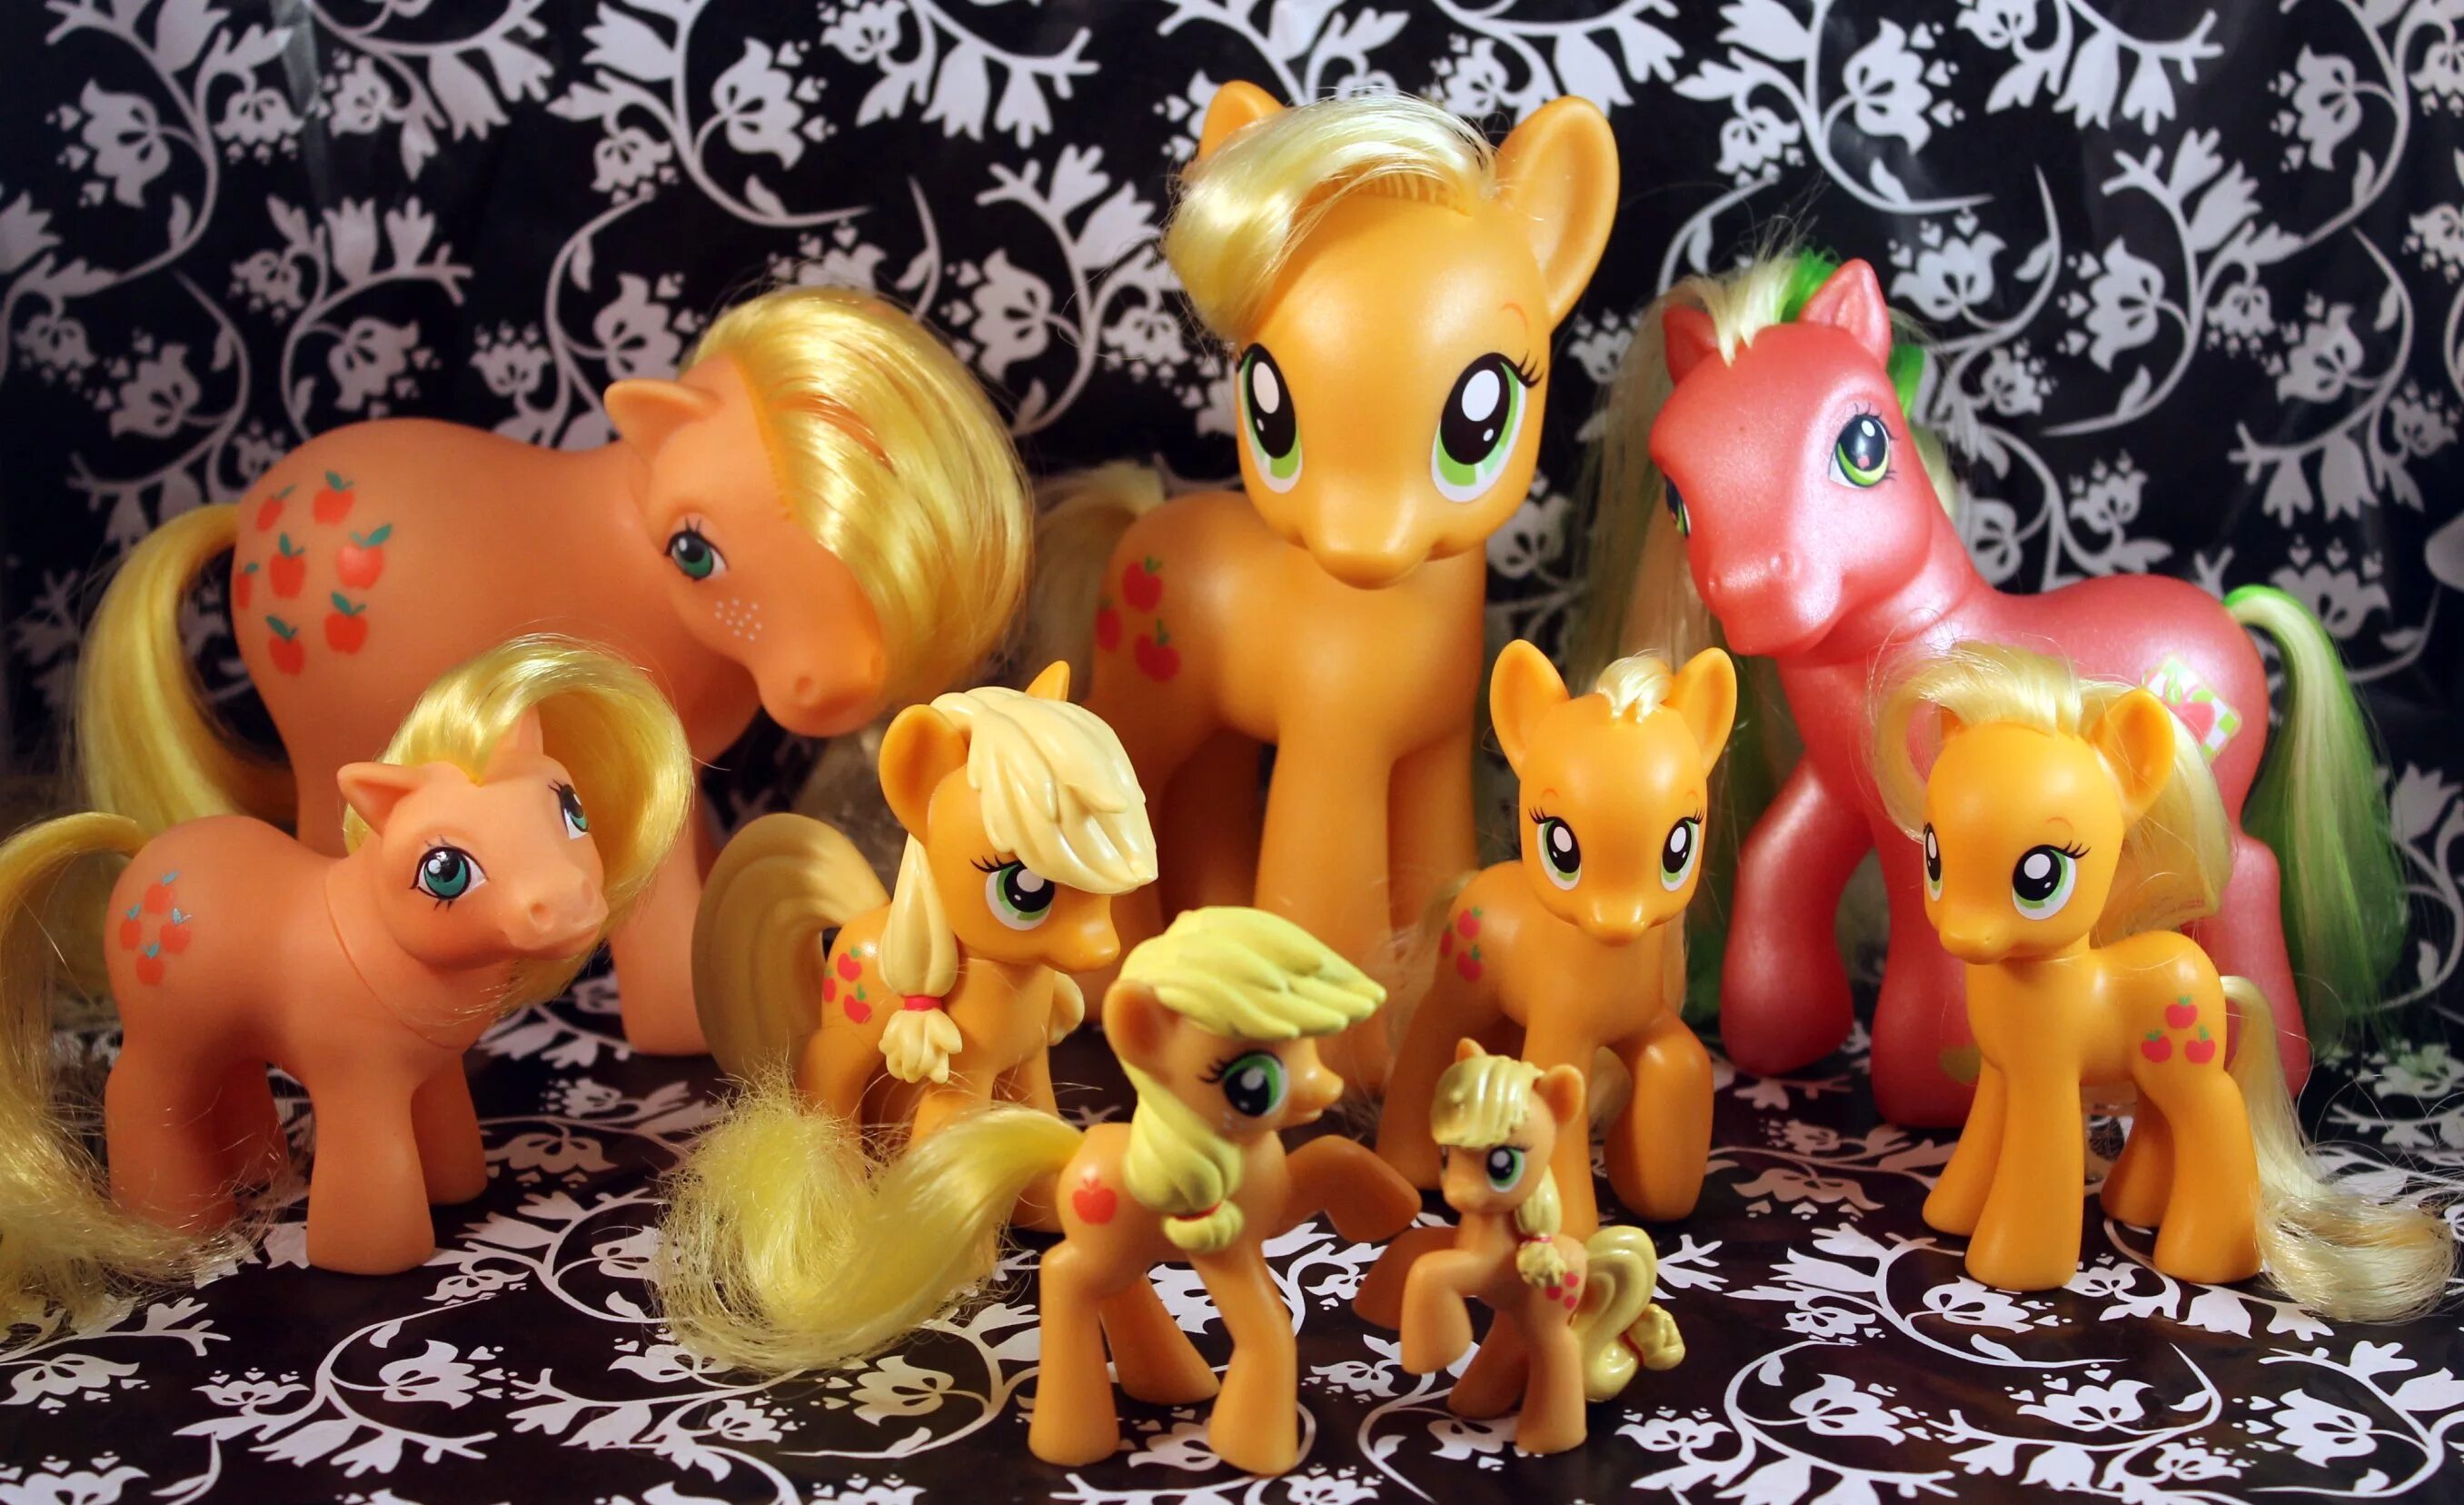 My little Pony игрушки Эпплджек. Пони 5 поколение Эпплджек. Эпплджек игрушка пони Hasbro 2010. My little Pony 1 поколение игрушки. Коллекция игрушек купить